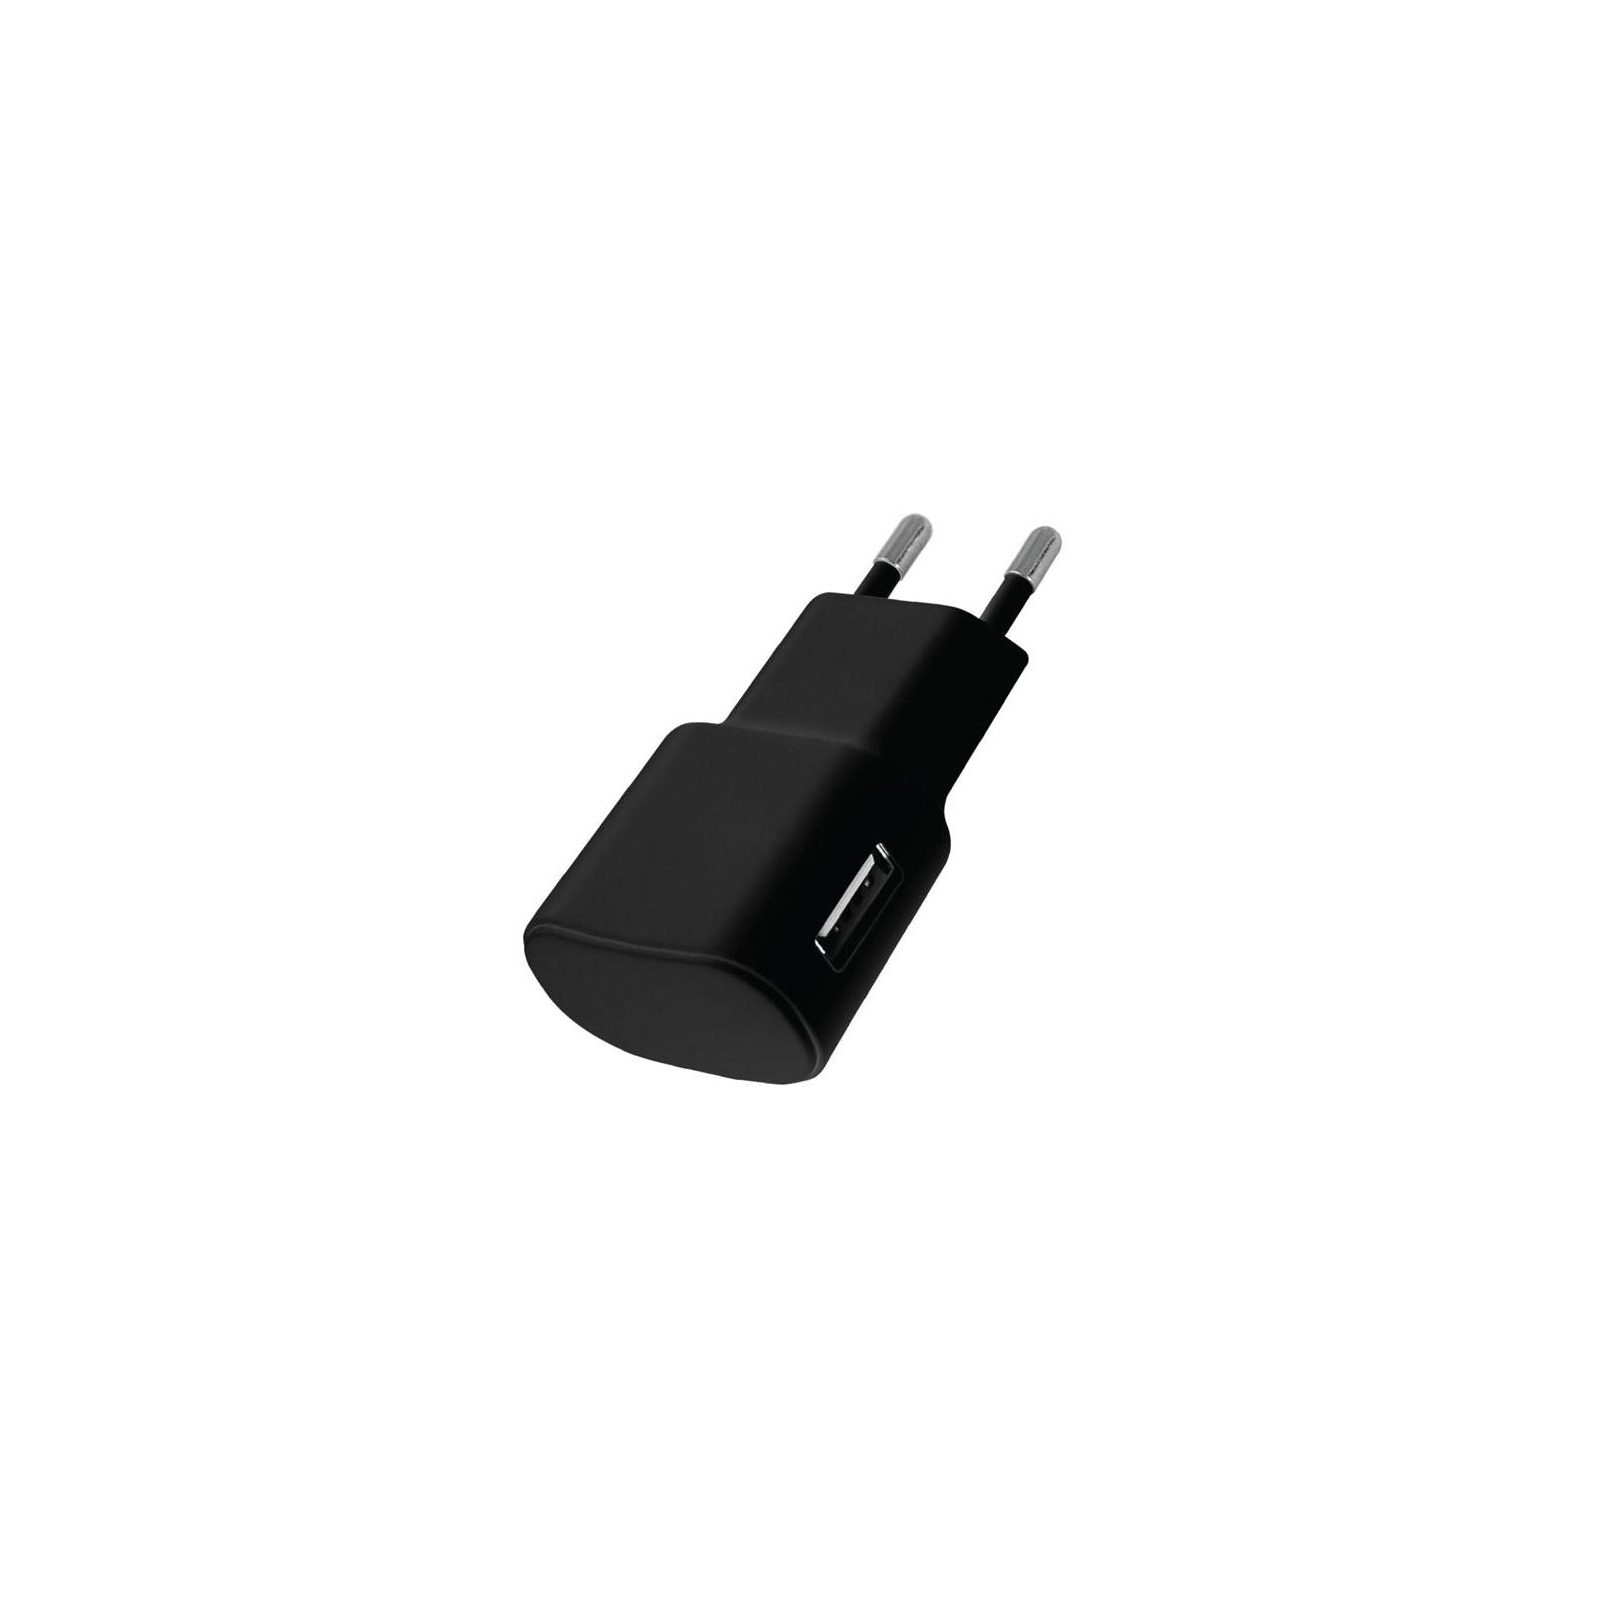 Зарядное устройство Florence USB, 1.0A black (FW-1U010B)